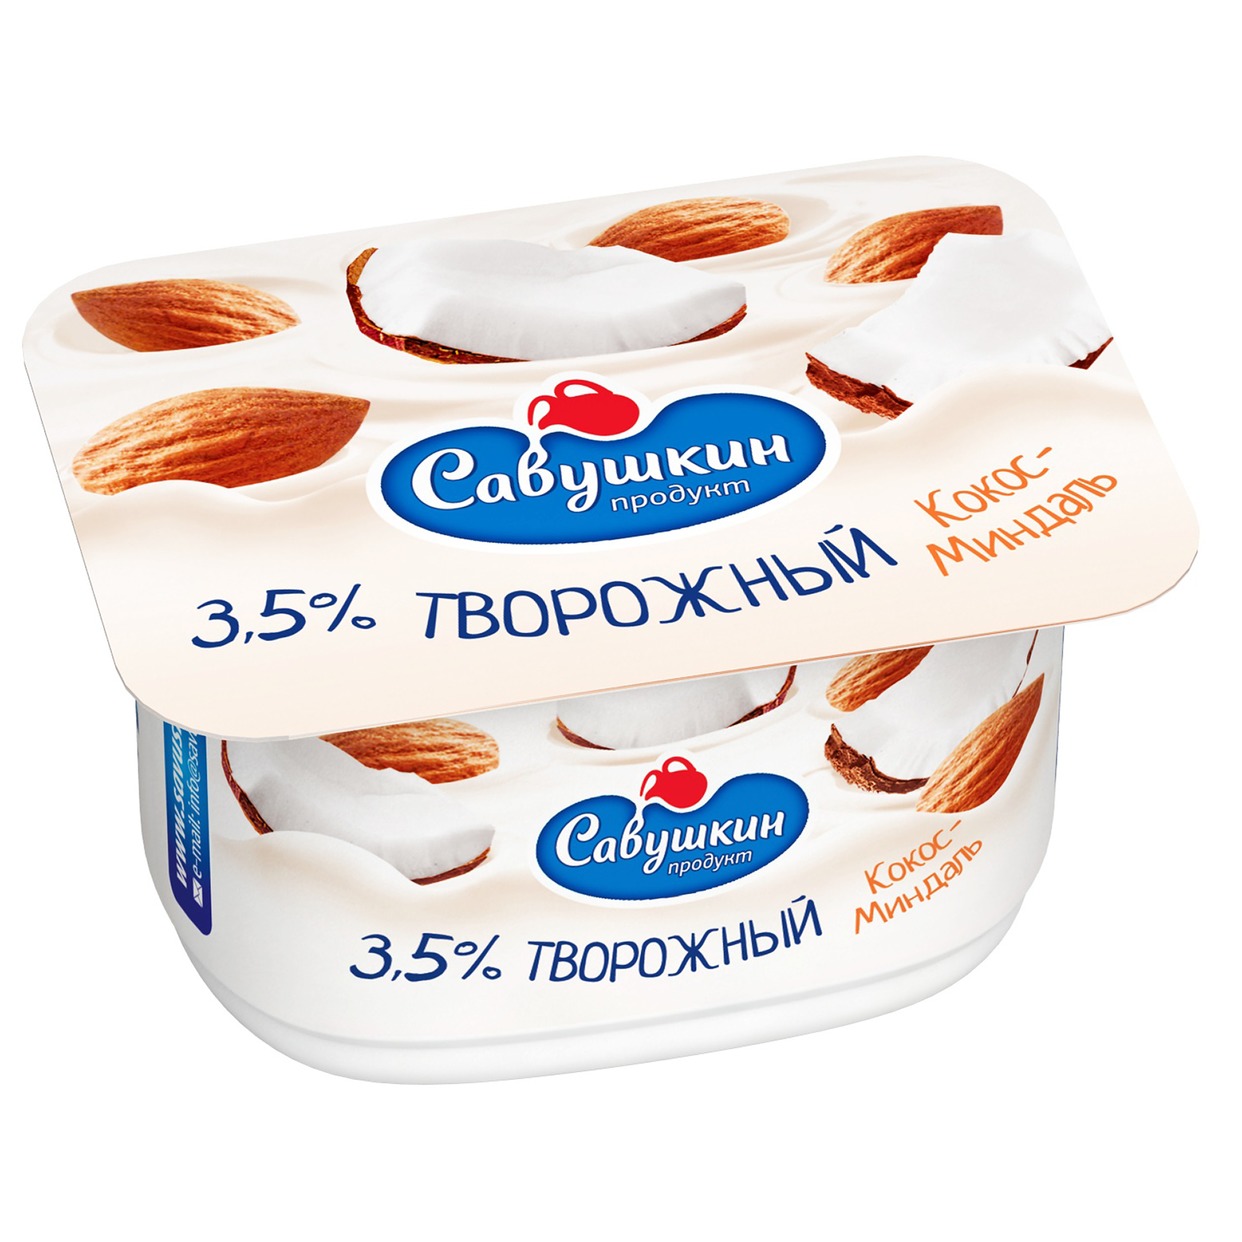 Паста "Савушкин Продукт" творожная десертная кокос-миндаль 3,5% 120г по акции в Пятерочке